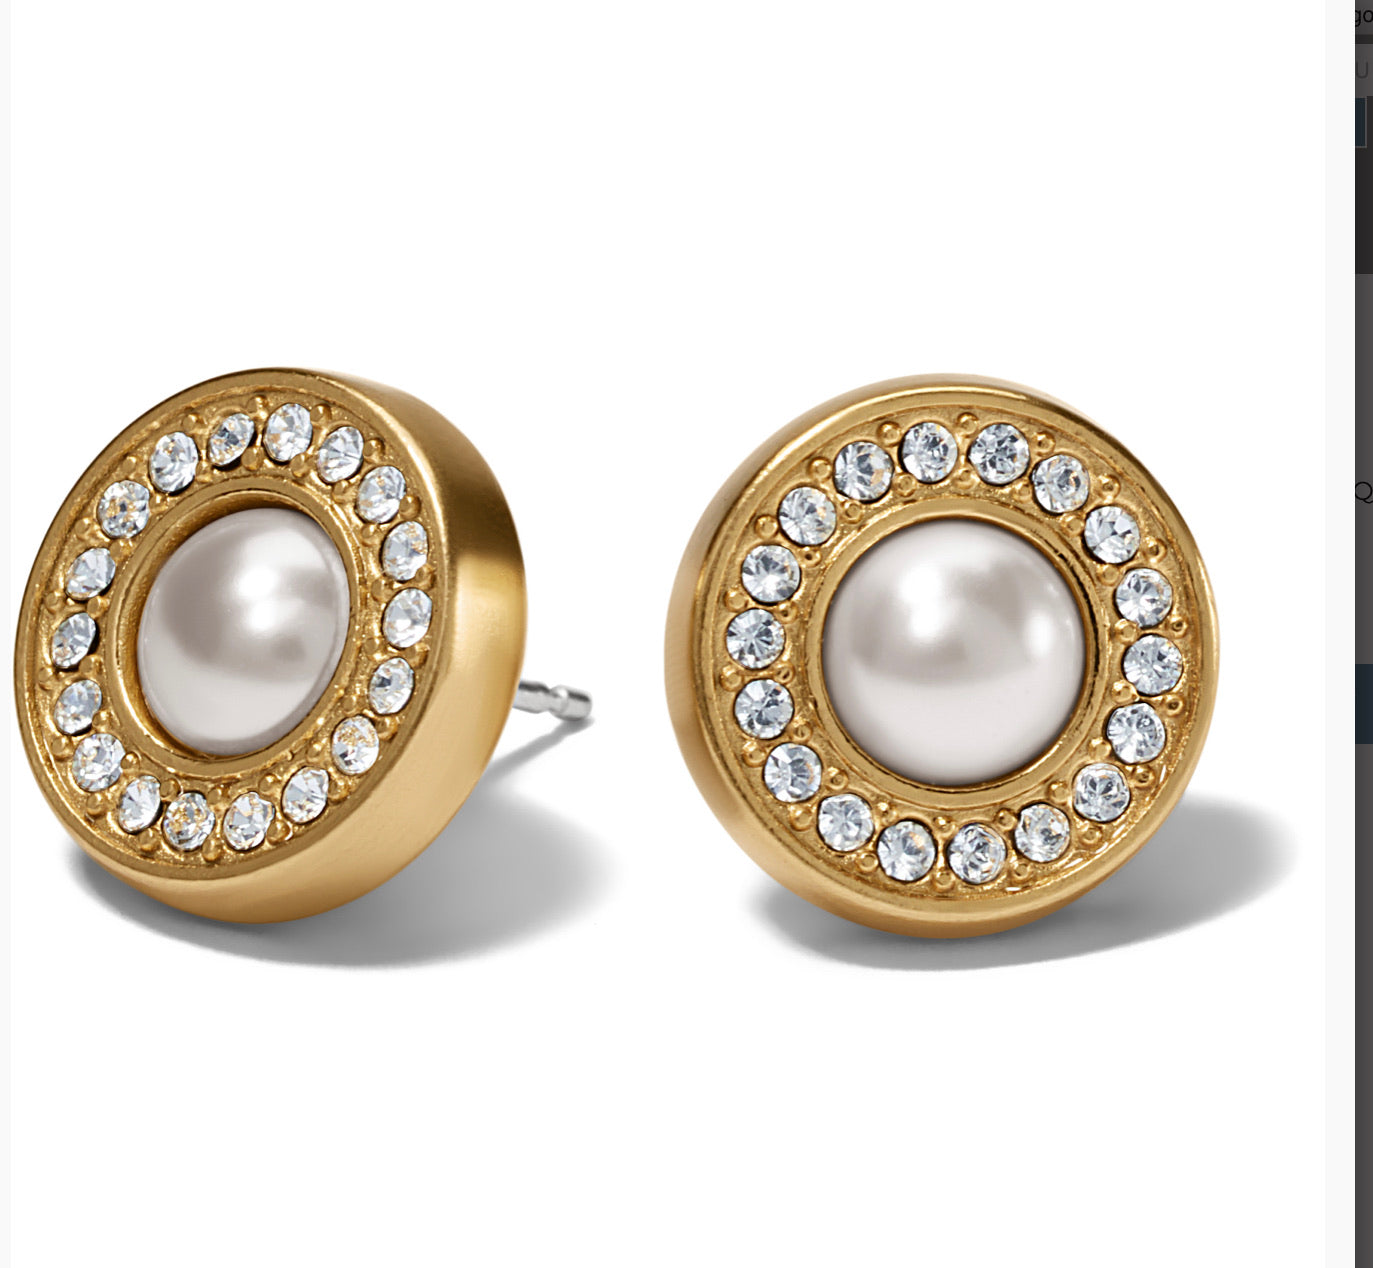 Gold pearl earrings - Styylo Fashion - 3560832